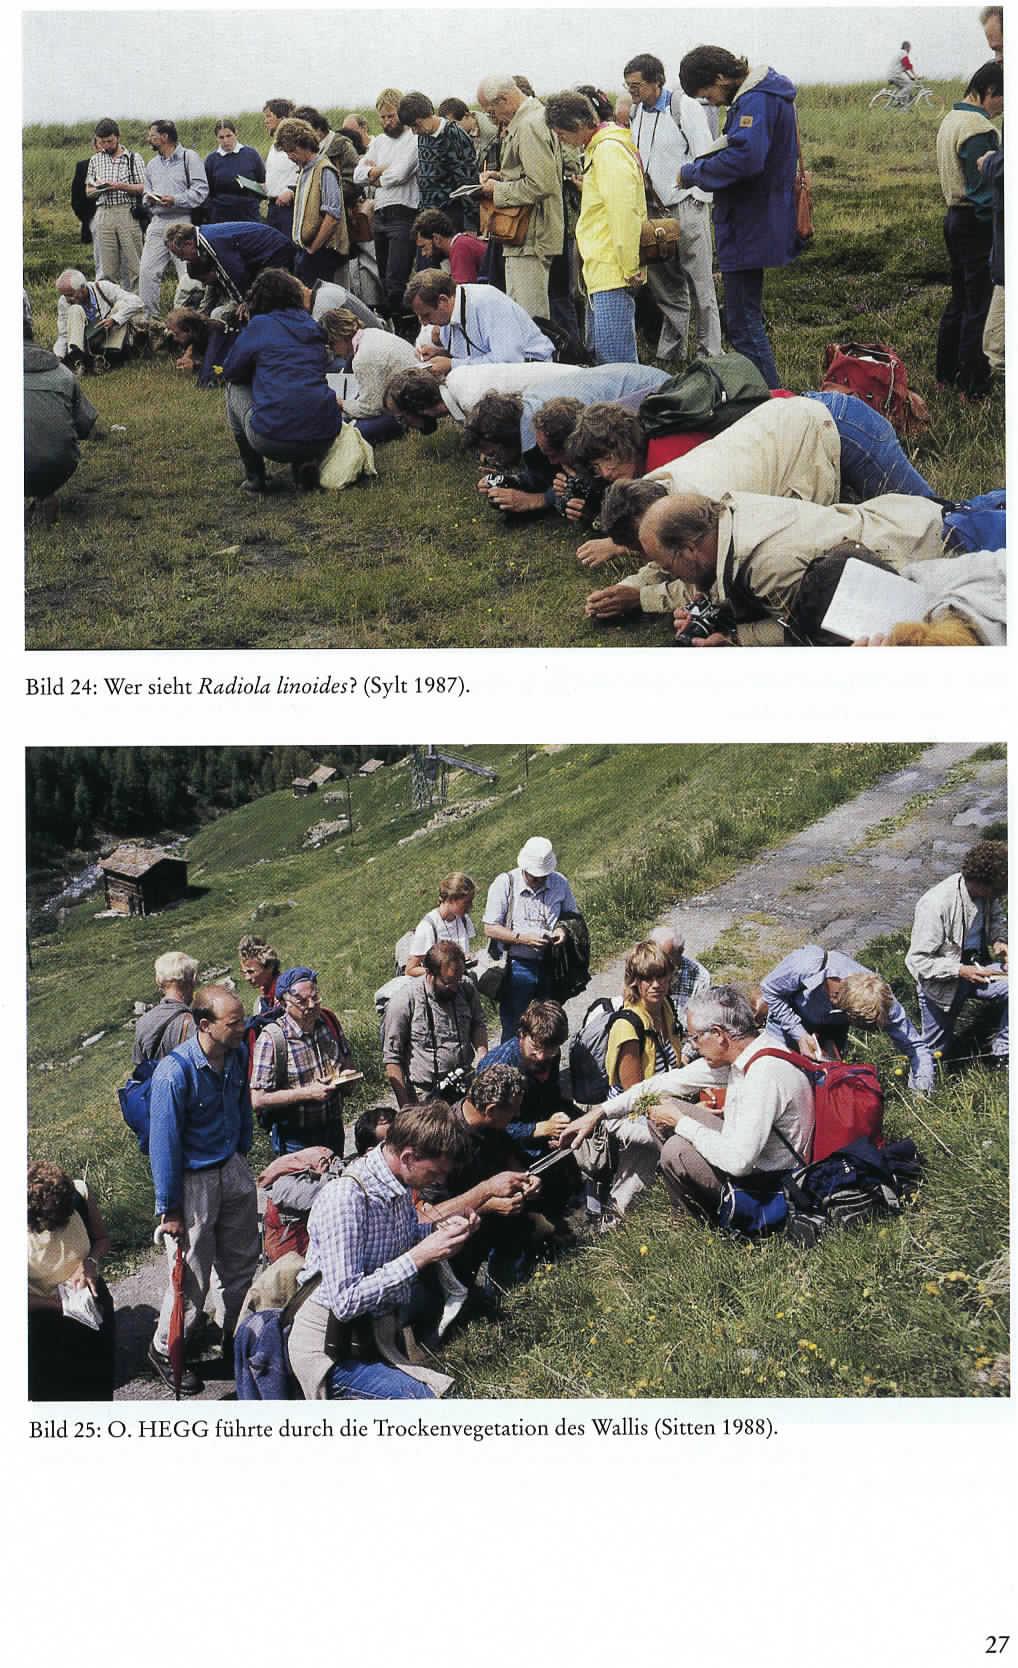 Bild 24: Wer sieh: Radiola Unoides} (Sylt 1987)/ Bild 25: O.